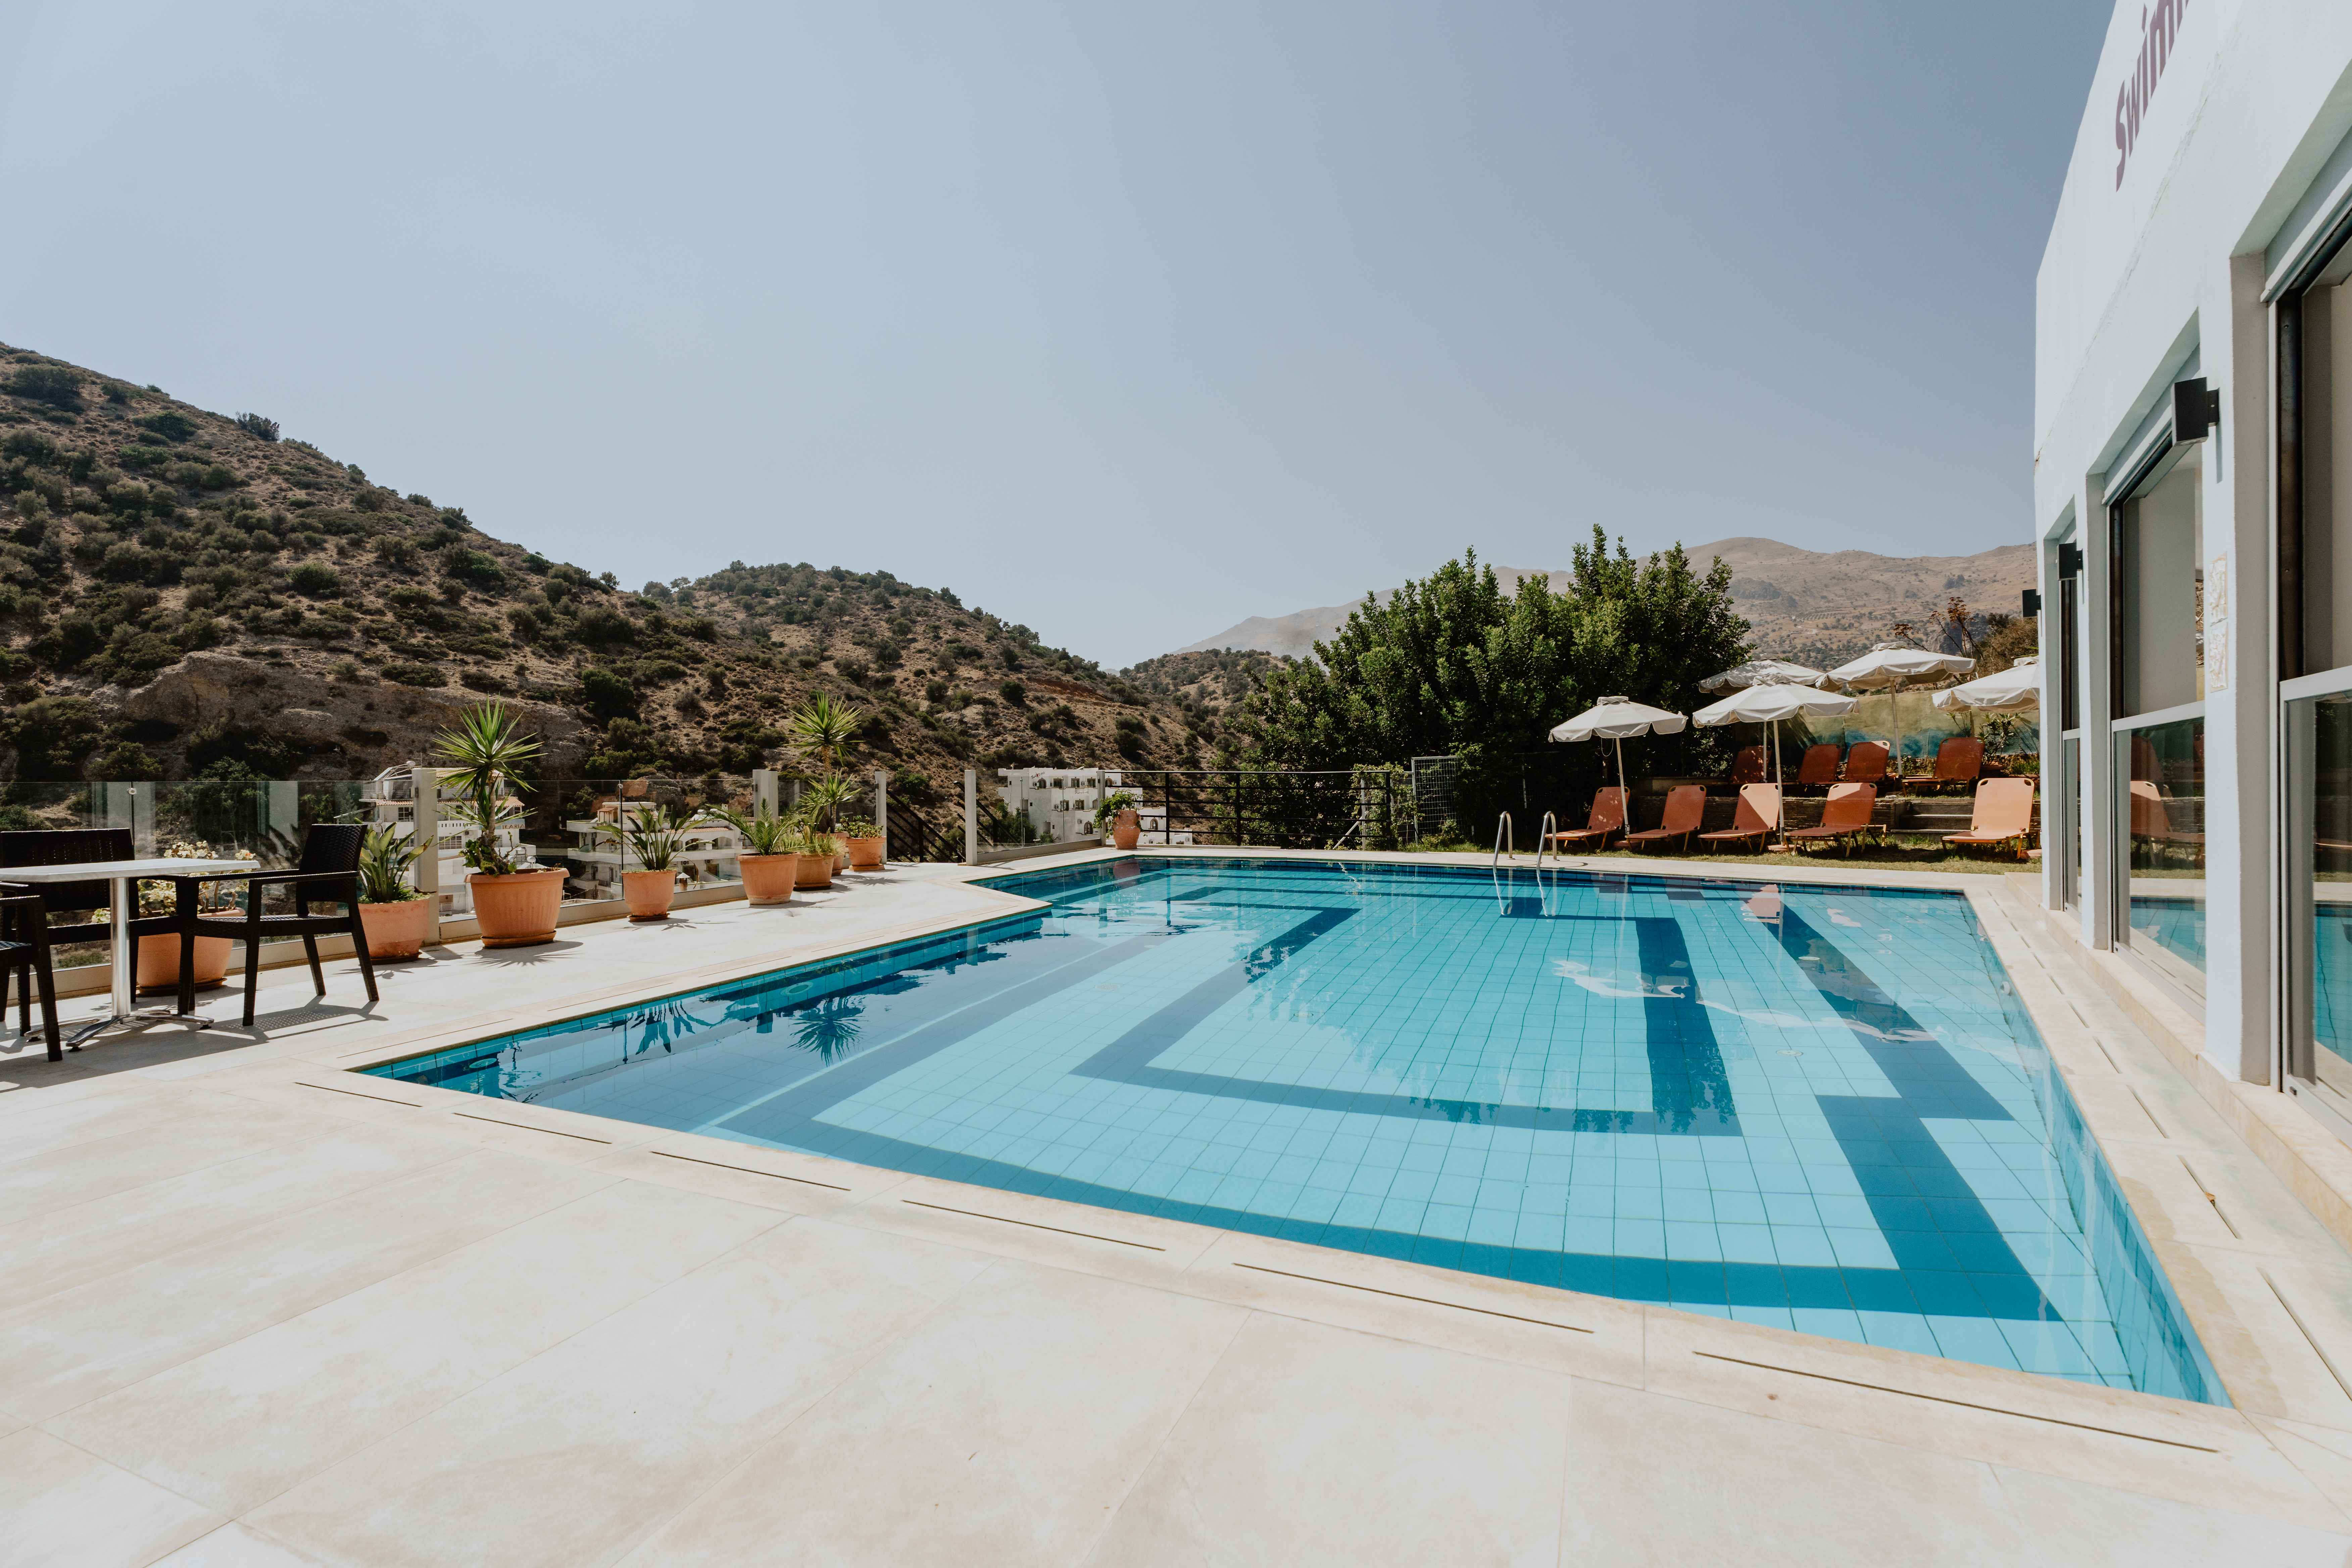 Petra Hotel Crete 